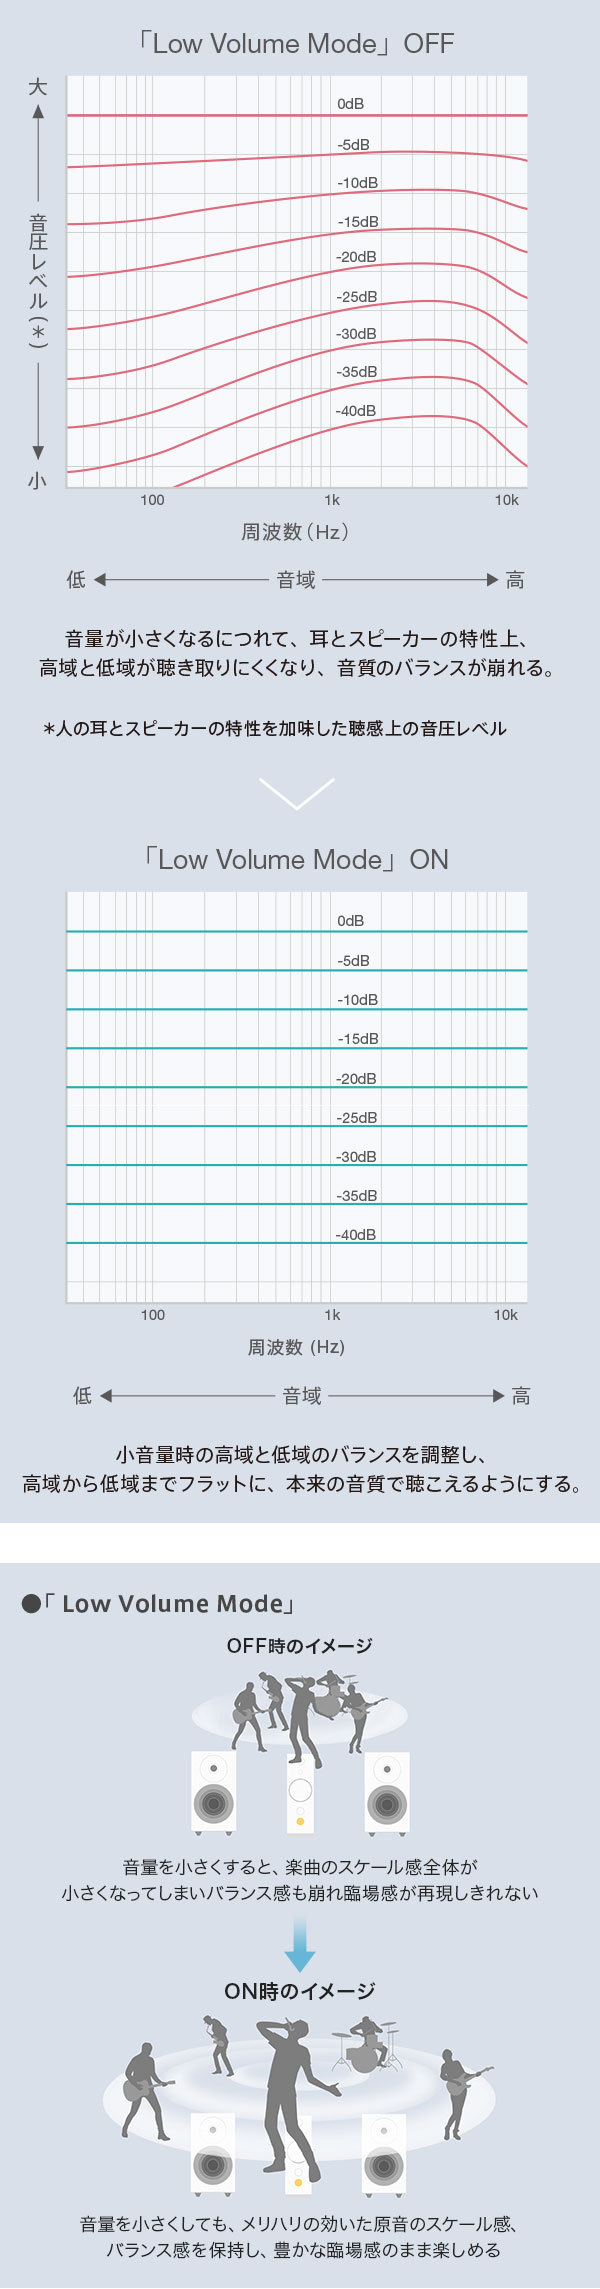 uLow Volume ModevOFF/ONC[W1^uLow Volume ModevOFF/ONC[W2